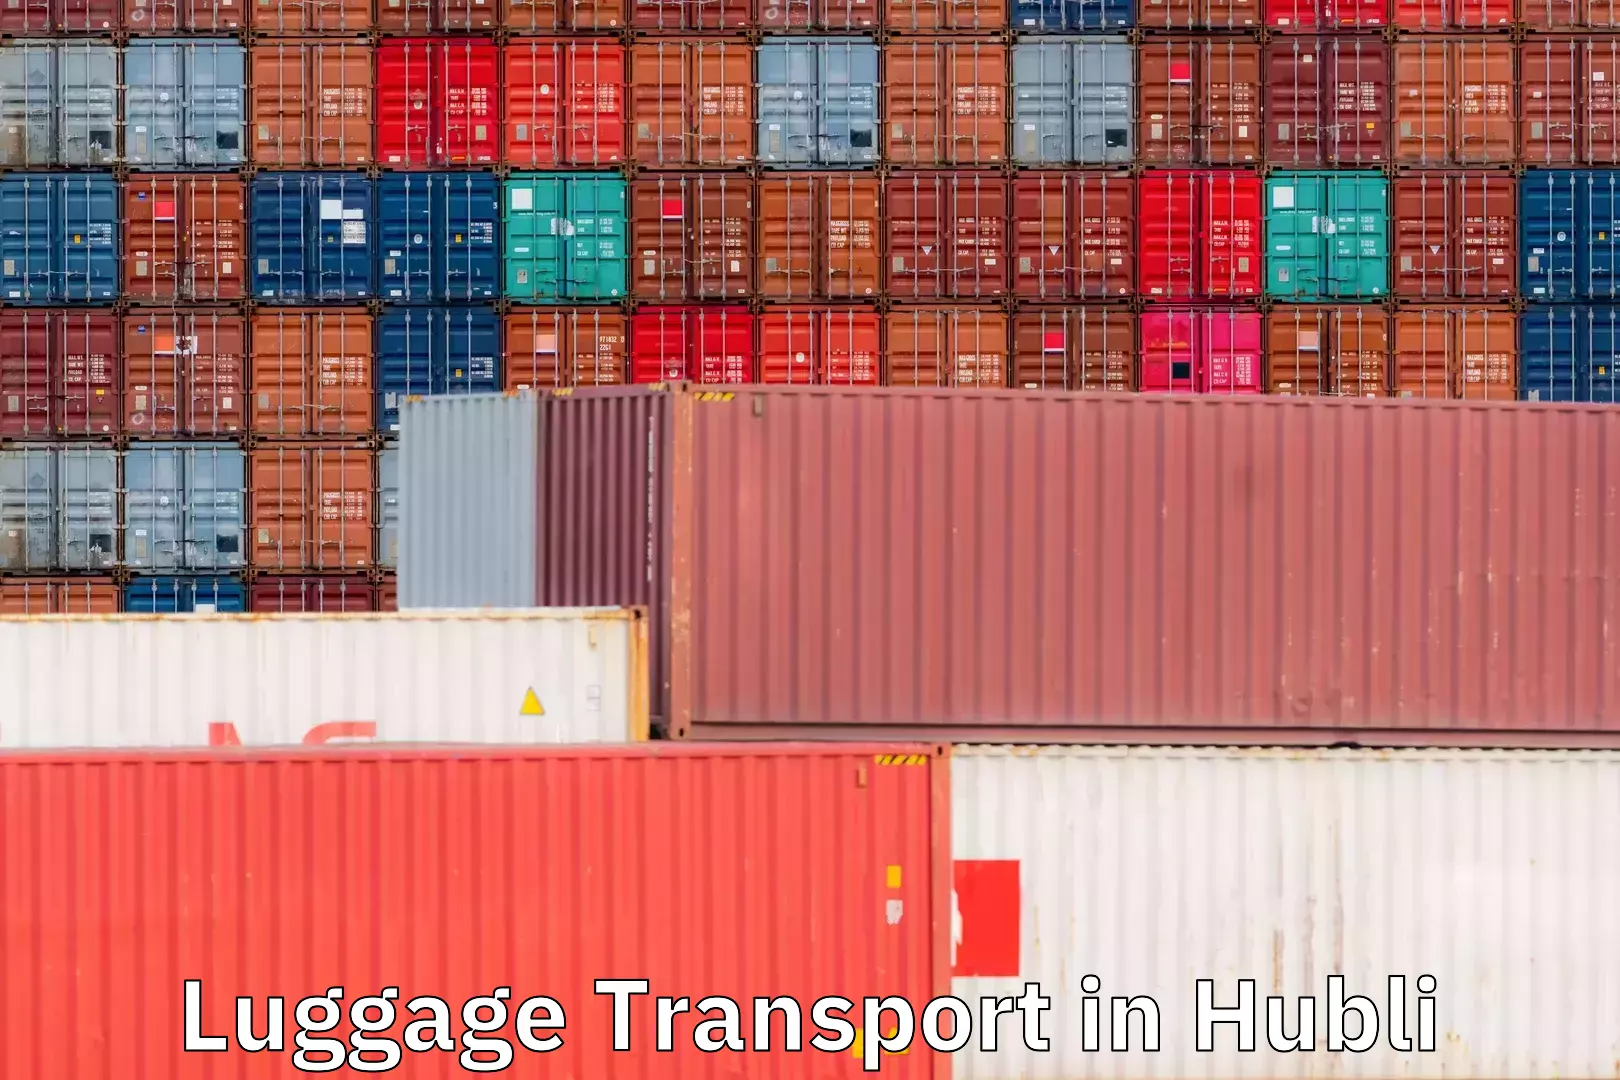 Global baggage shipping in Hubli